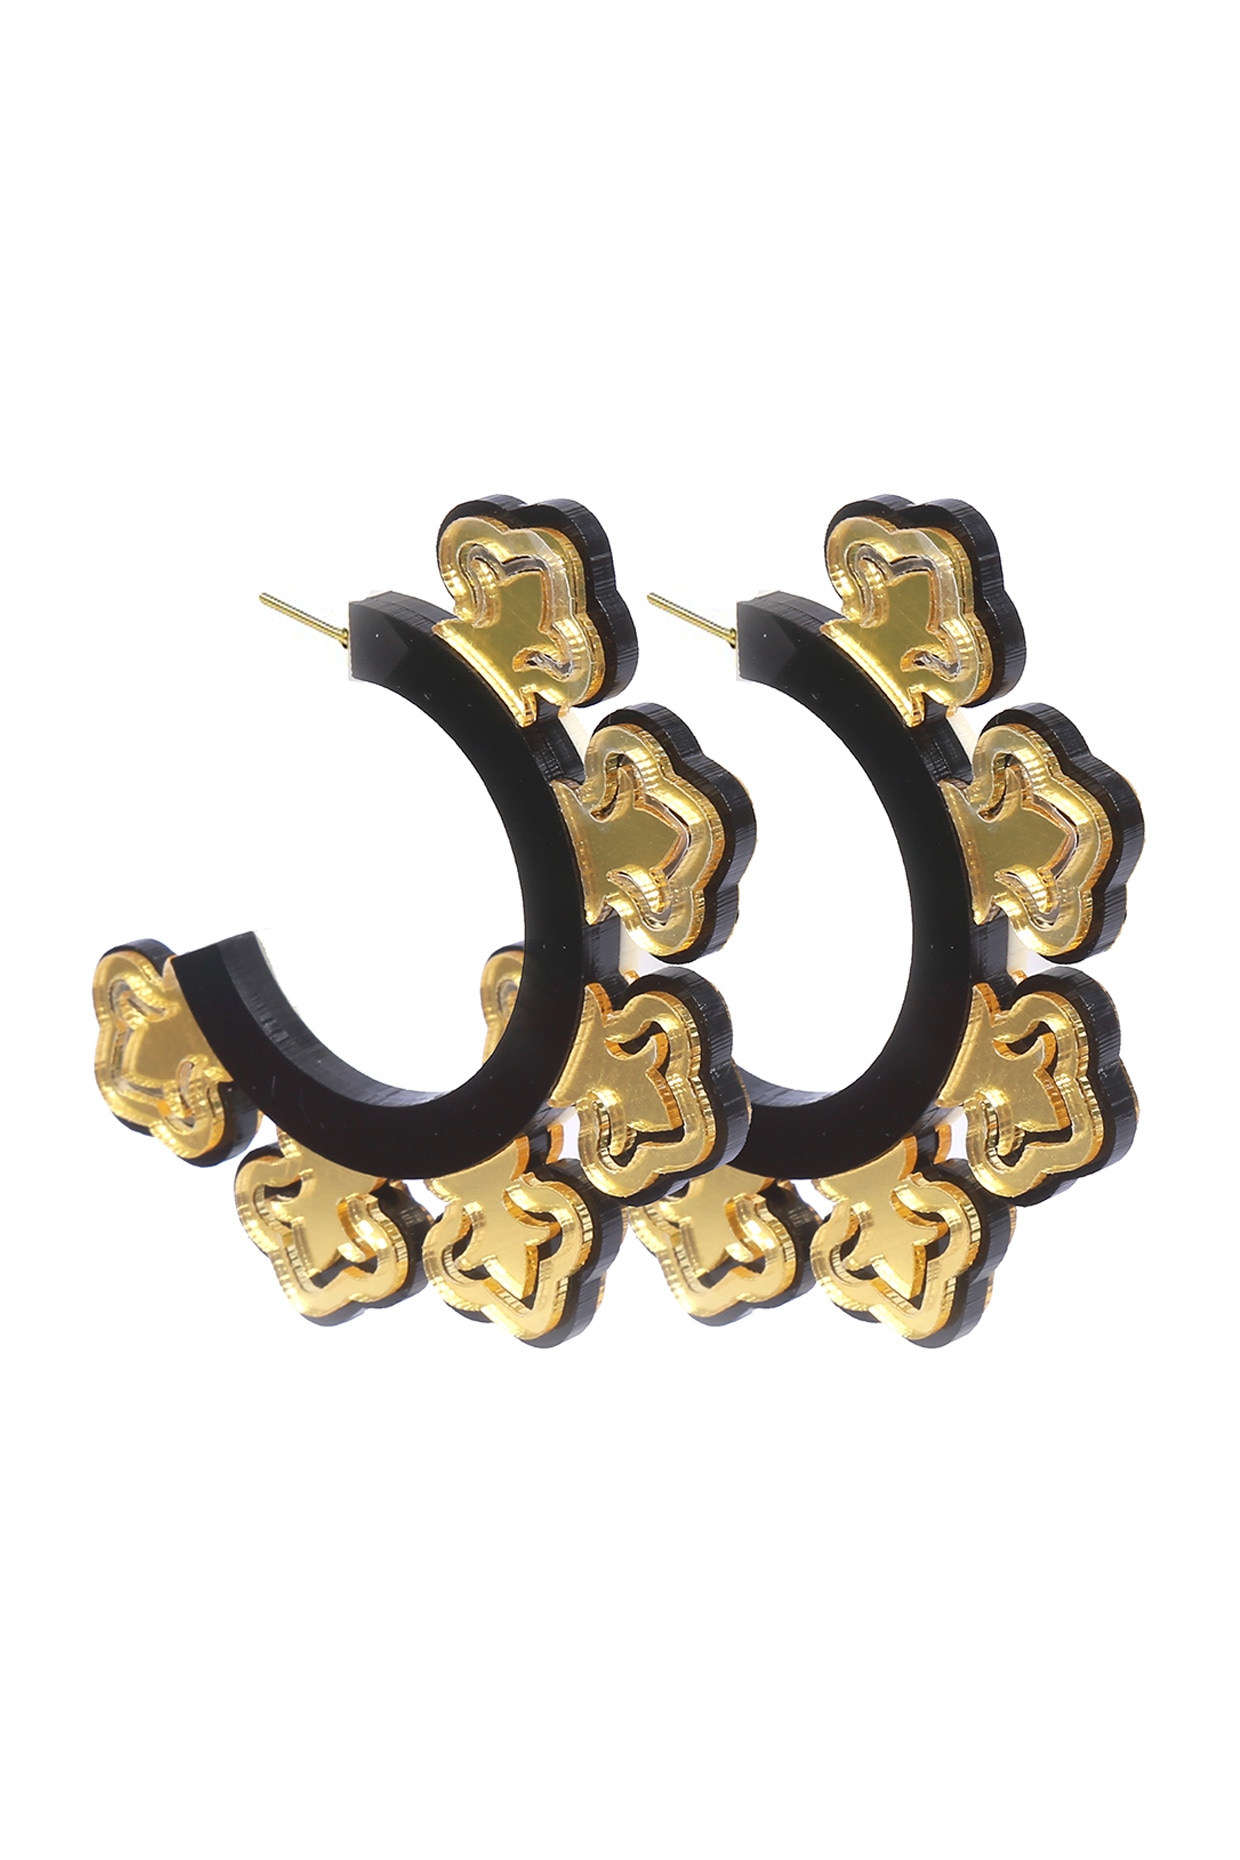 Update more than 206 mandala hoop earrings best